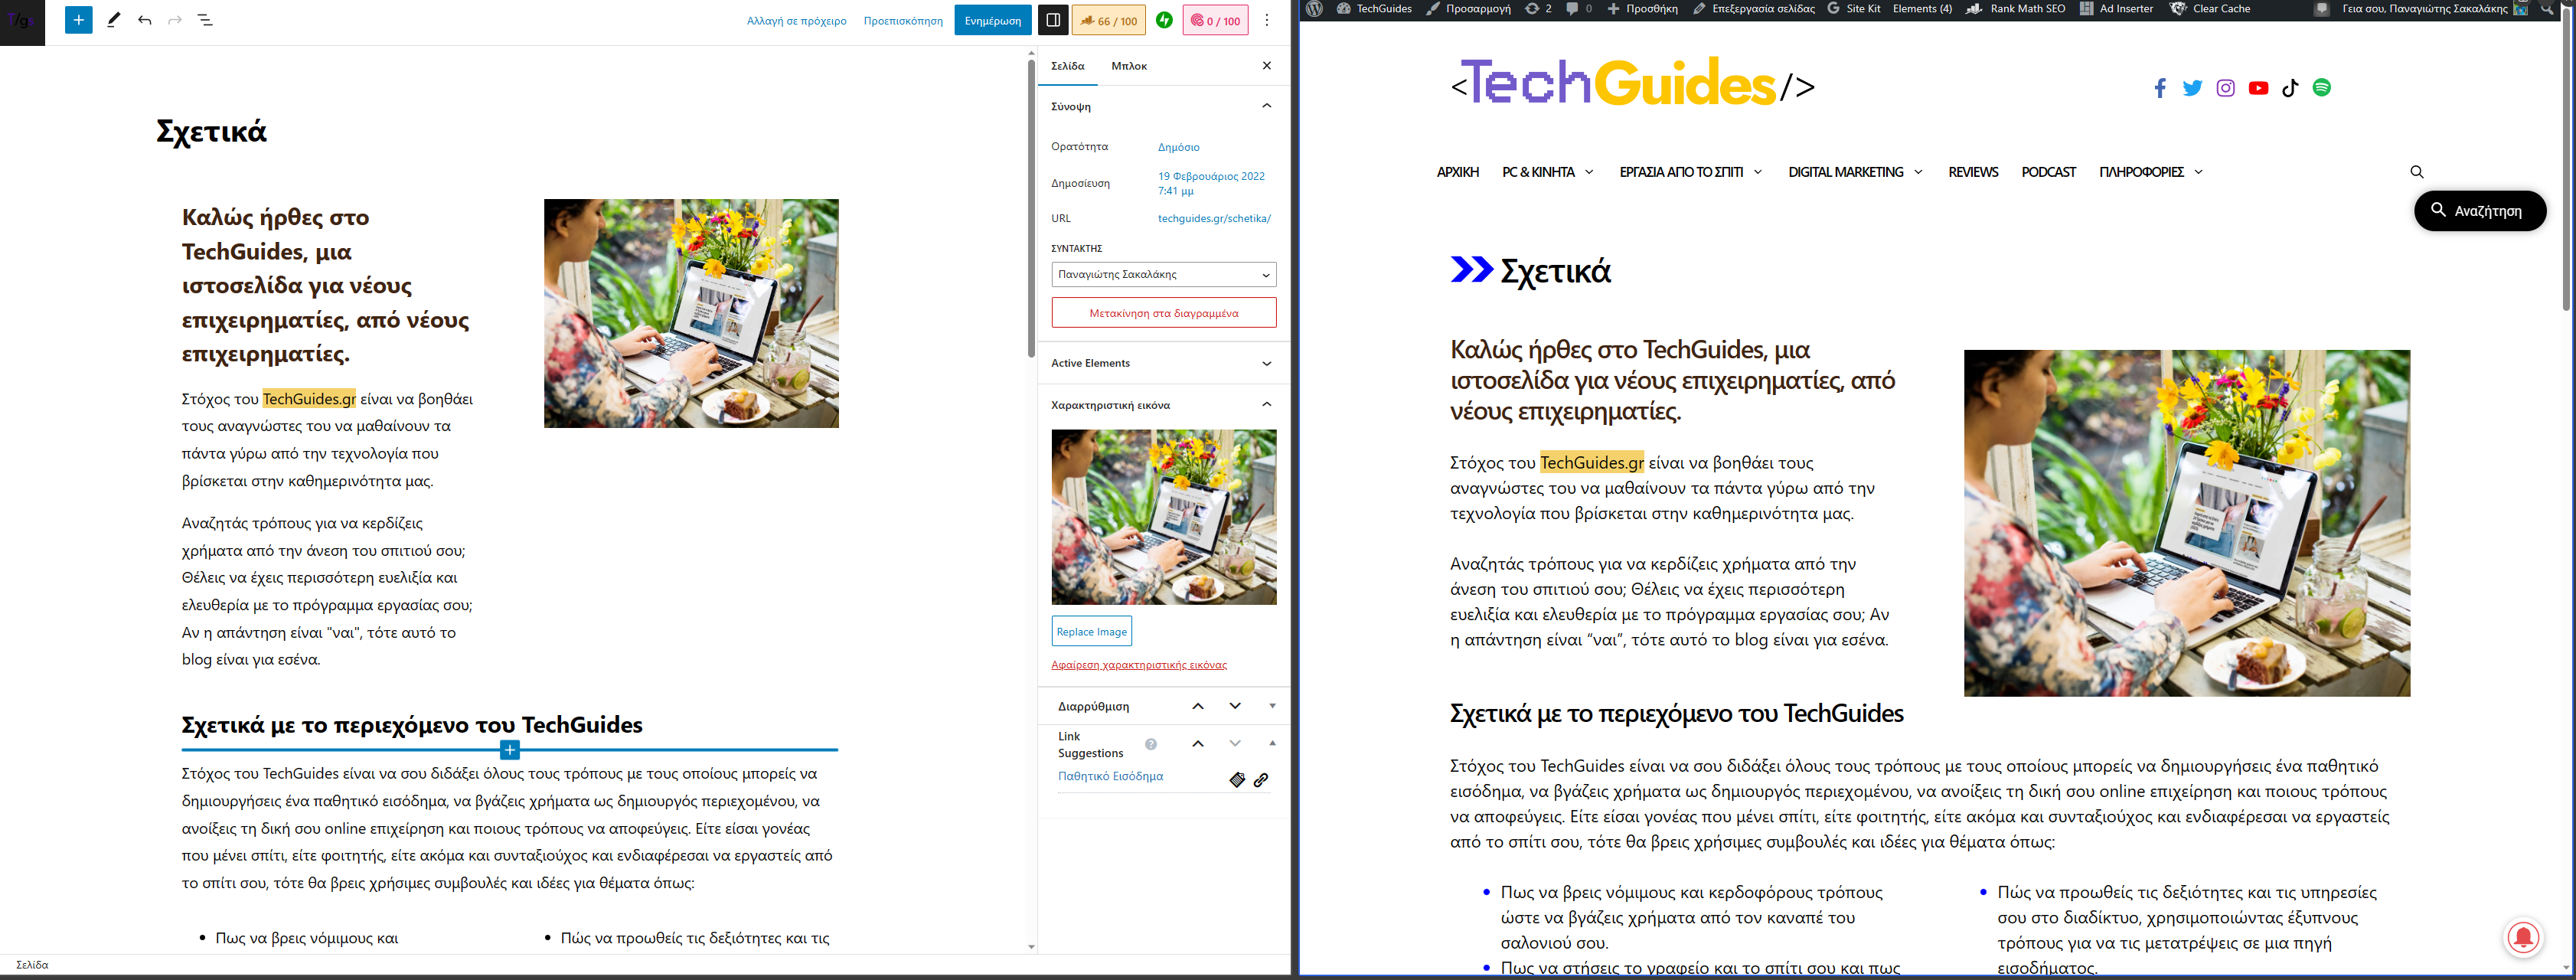 Σχετικά σελίδα του TechGuides - WordPress Gutenberg